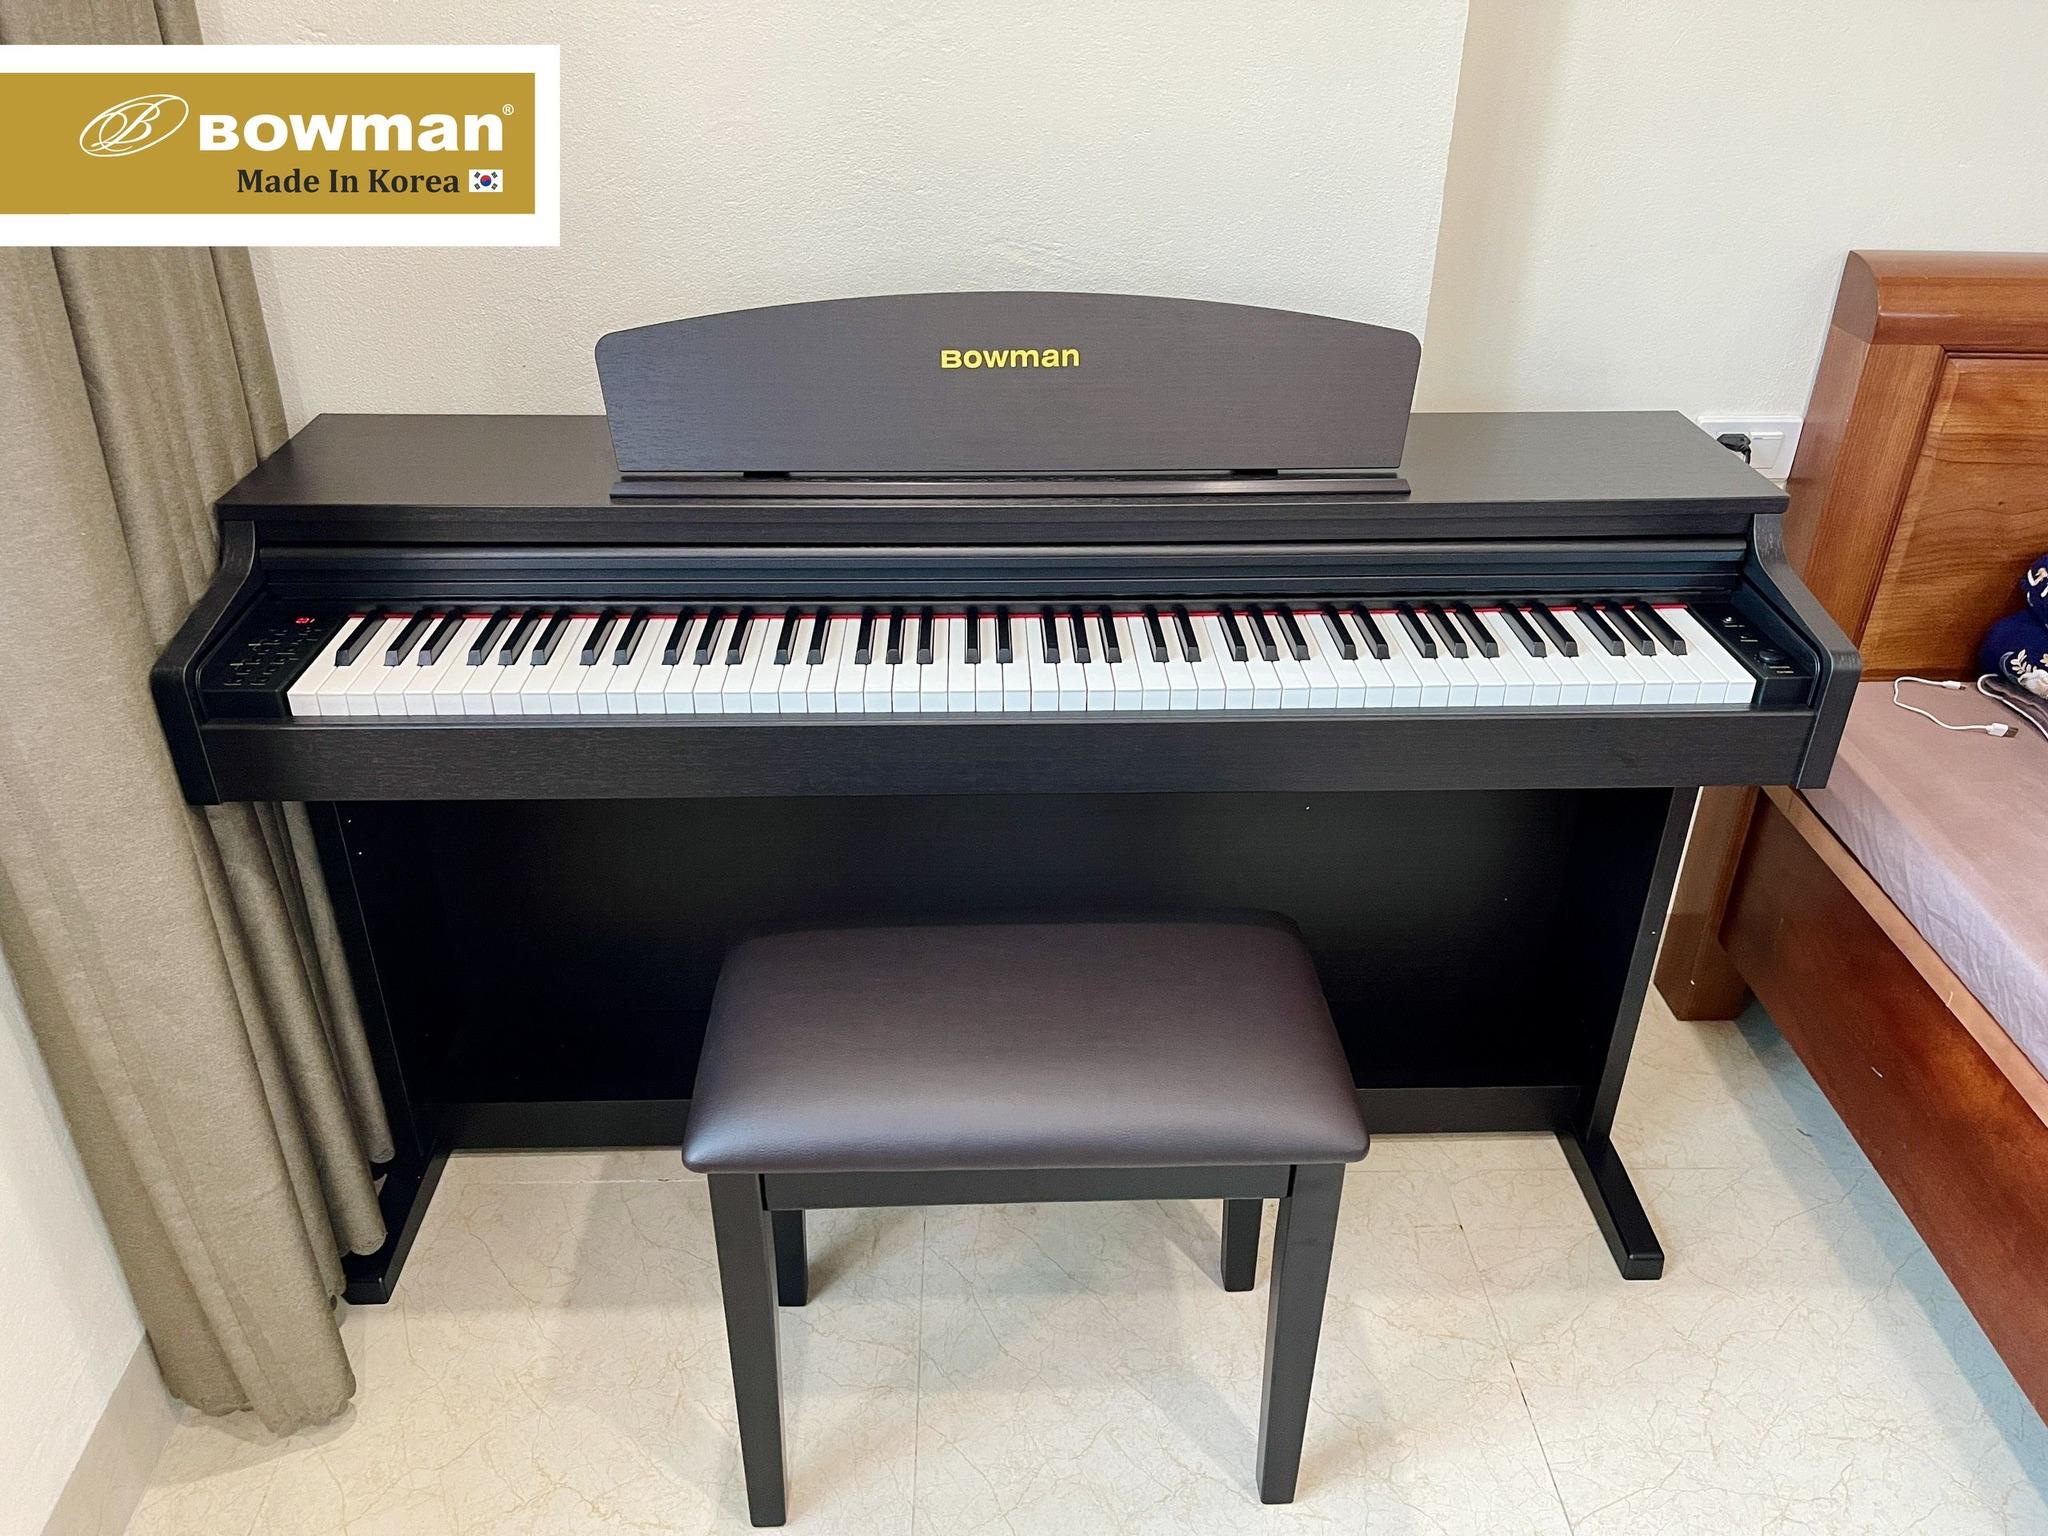 Bowman Piano thích hợp với mọi không gian